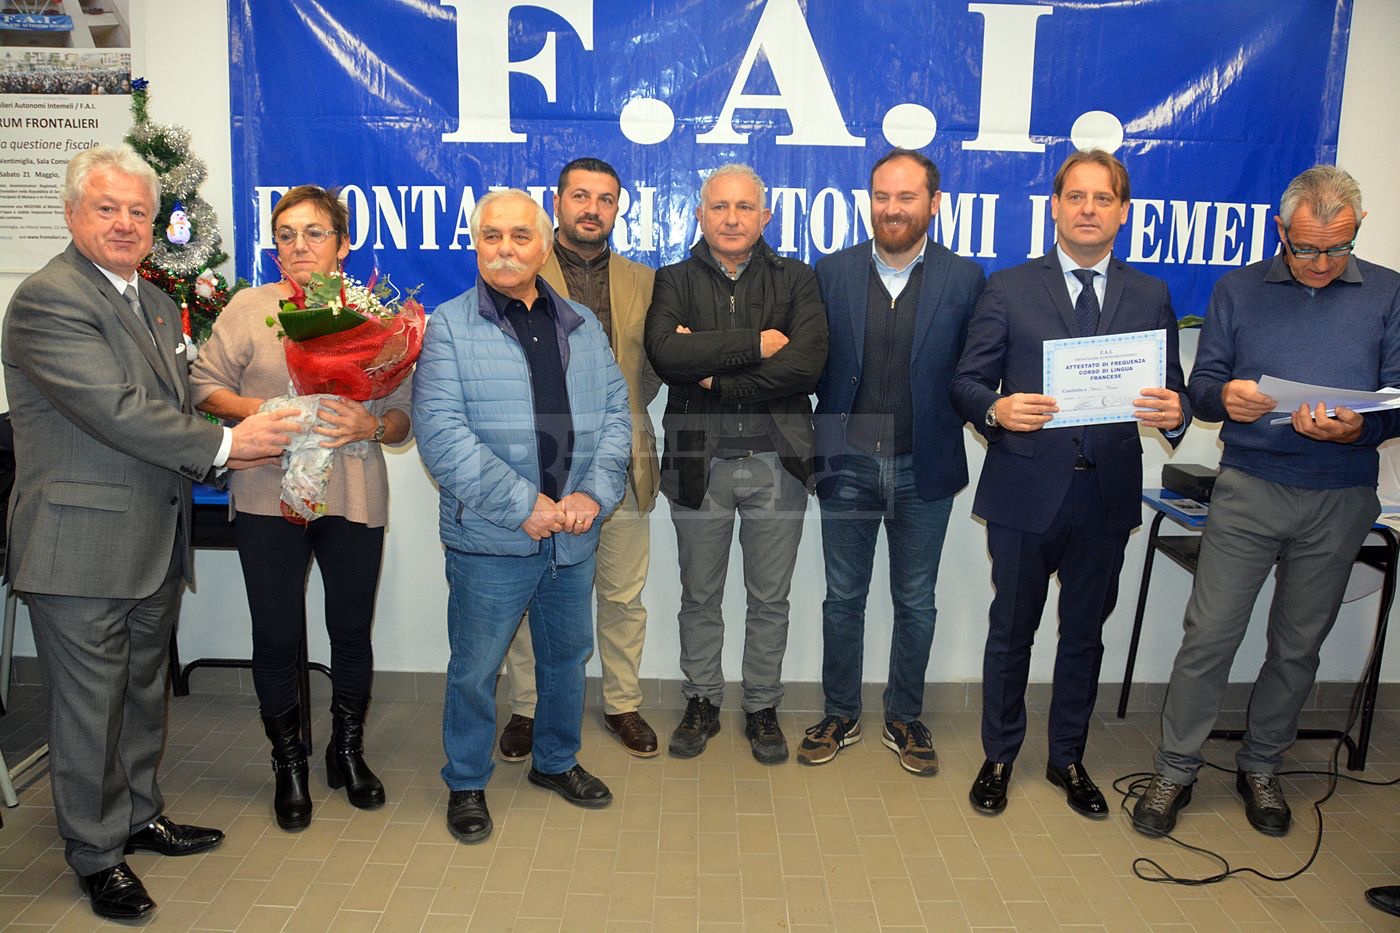 Frontalieri Ventimiglia certificati diplomi corso francese 15 dicembre 2019_67